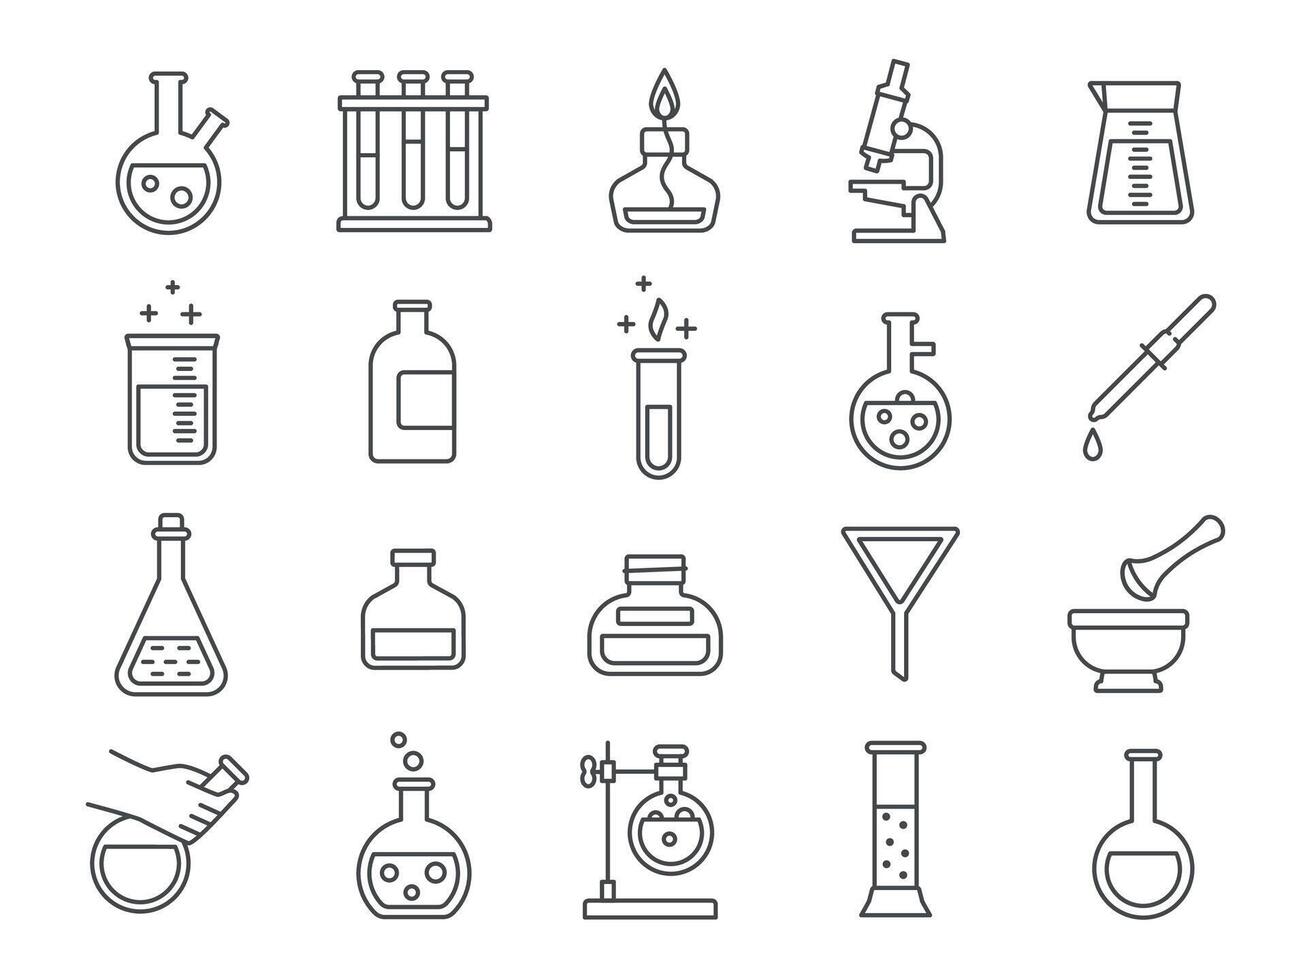 chimica o scienza ricerca laboratorio attrezzatura linea icone. farmacia laboratorio cristalleria, bicchieri, test tubi e fiaschi pittogrammi vettore impostato